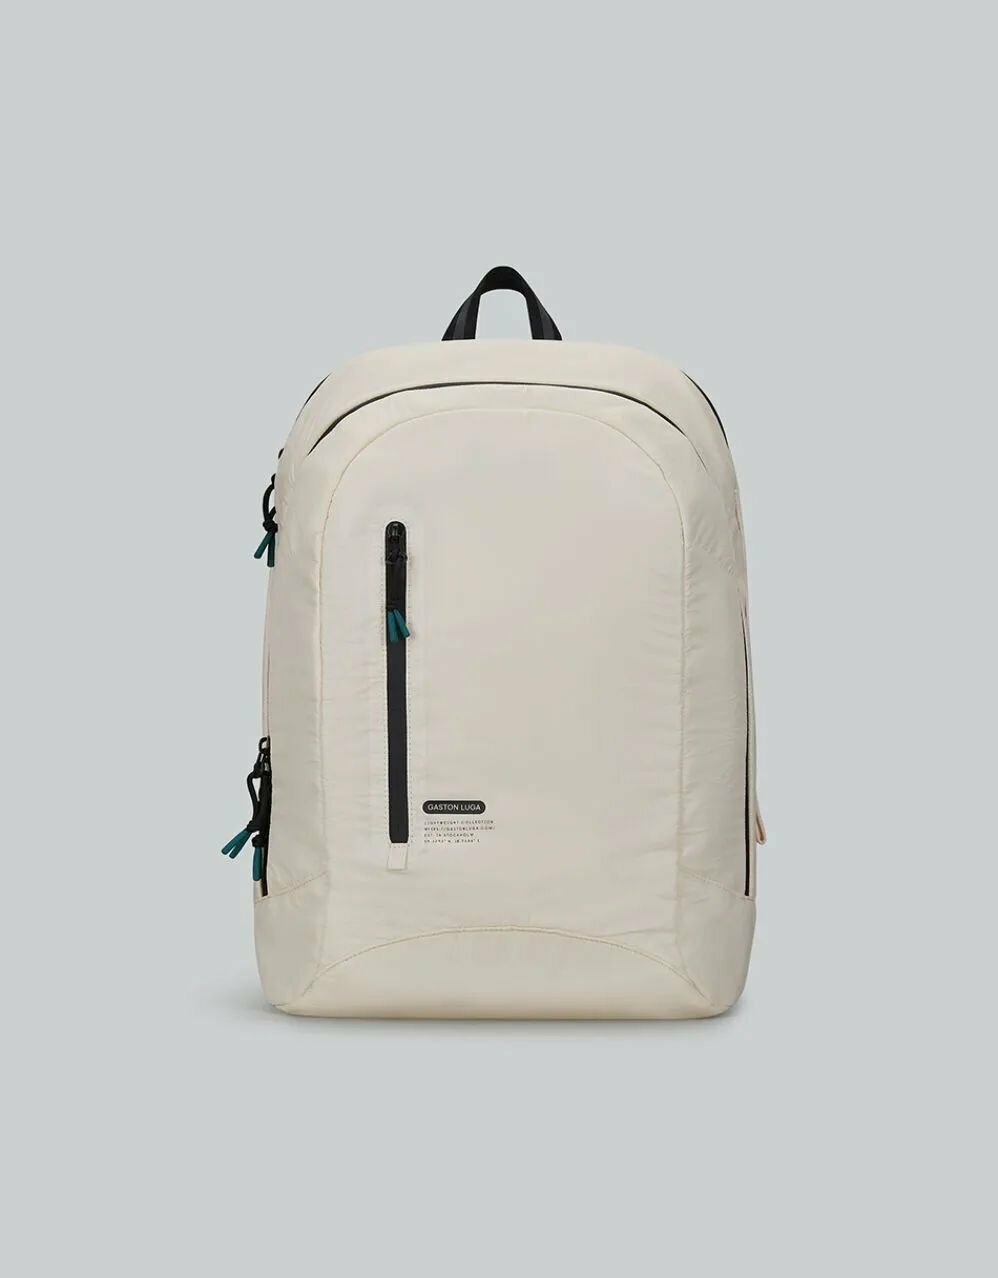 Рюкзак Gaston Luga LW101 Lightweight Backpack 11'-16'. Цвет: слоновая кость